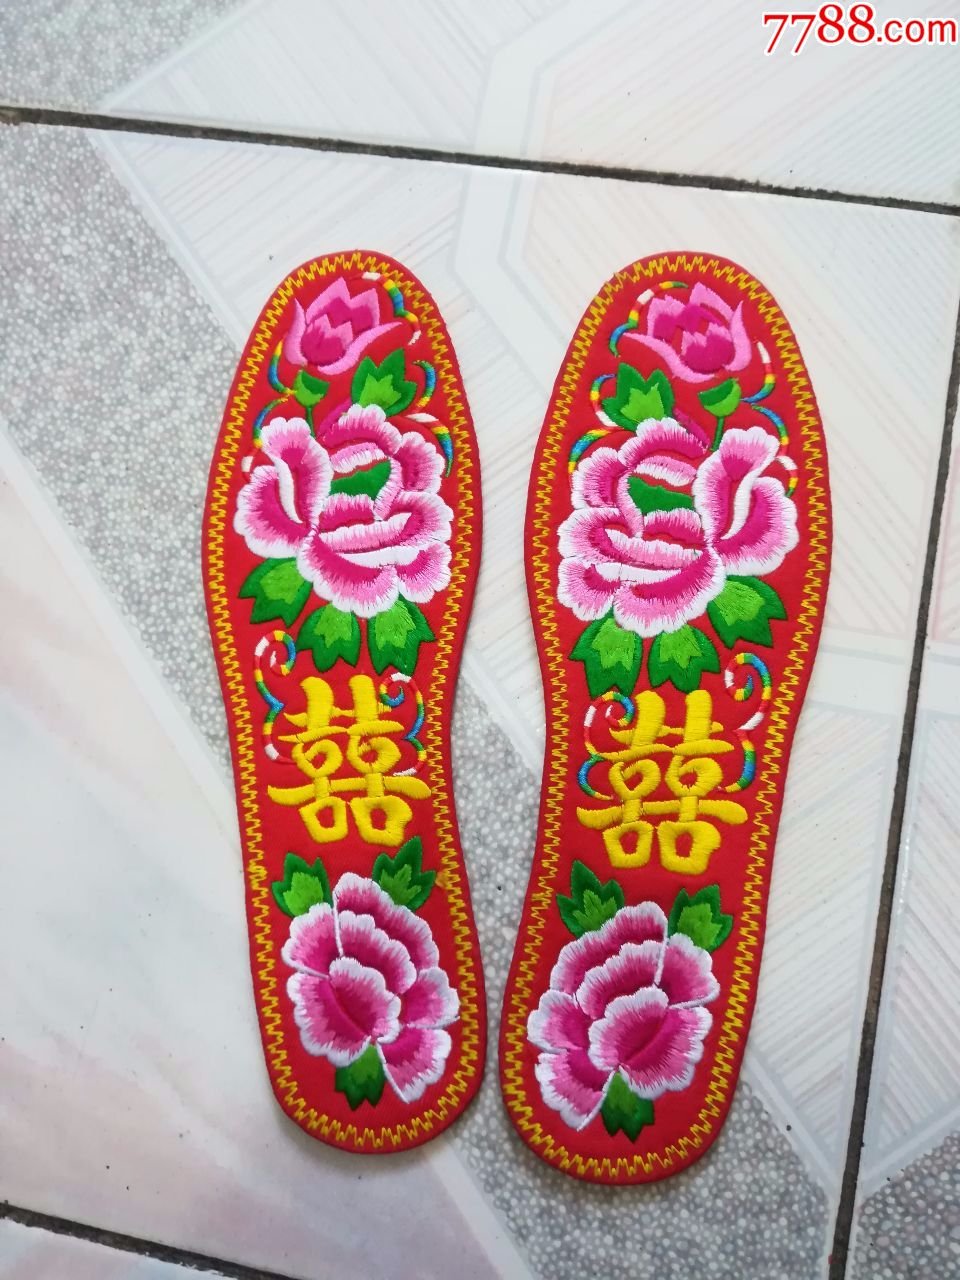 民间艺术刺绣双喜鞋垫